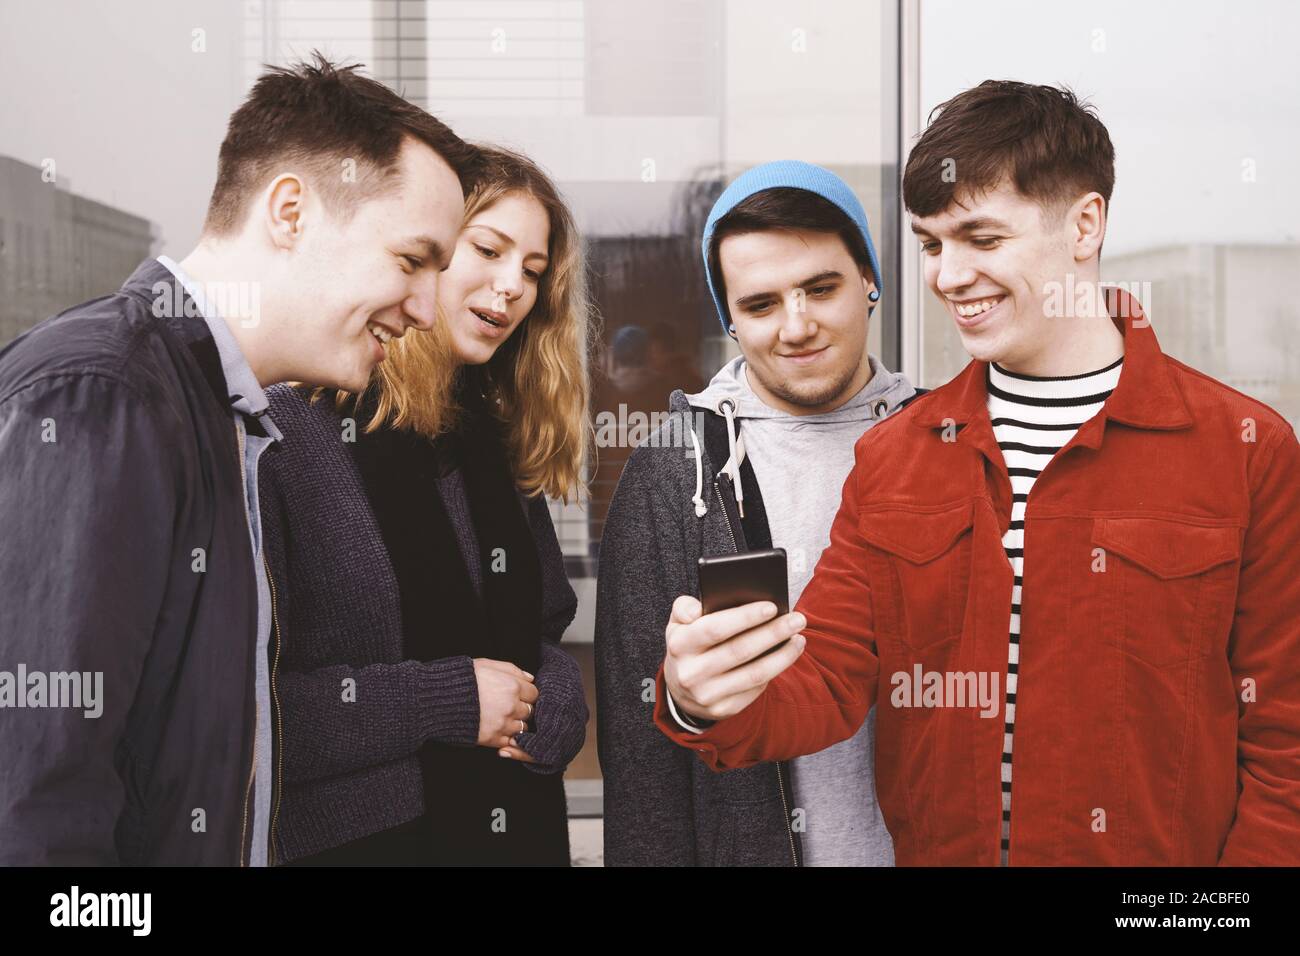 Junger Mann mit etwas Lustiges auf seinem Smartphone an eine Gruppe von Freunden - Städtische jugendliche Spaß haben und gemeinsam lachen Stockfoto